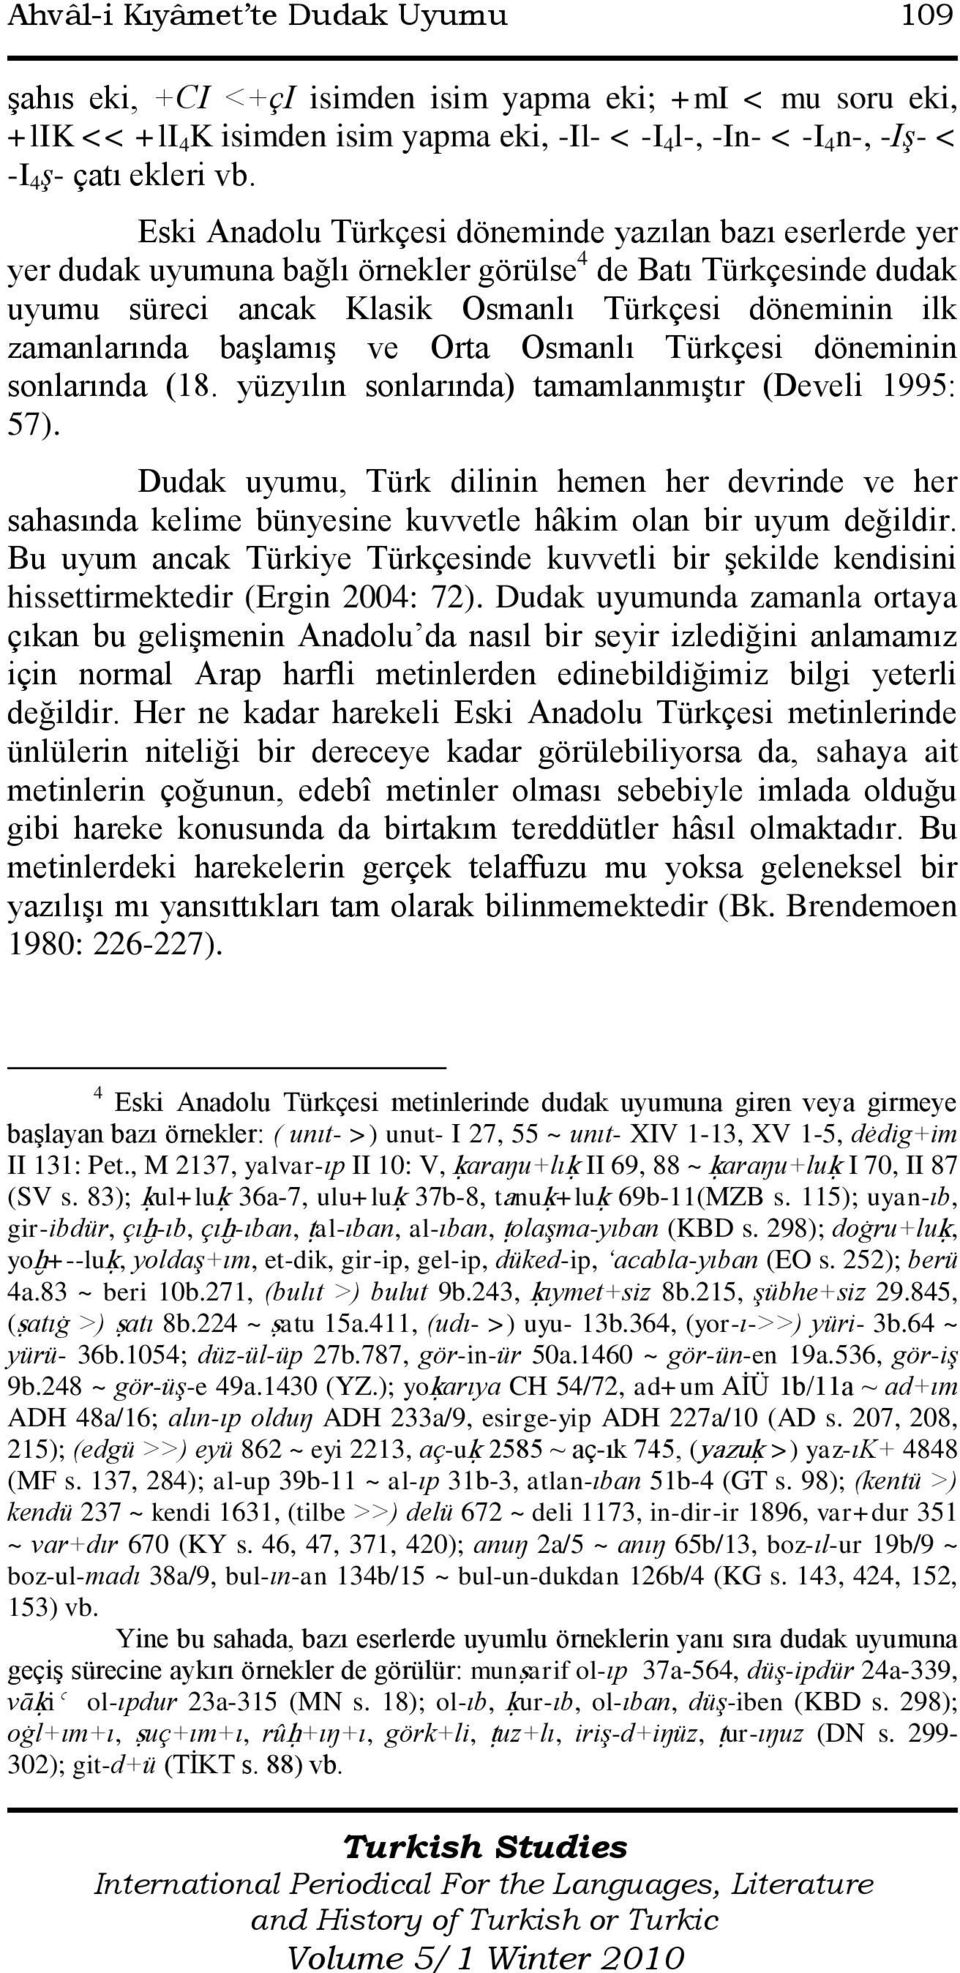 baģlamıģ ve Orta Osmanlı Türkçesi döneminin sonlarında (18. yüzyılın sonlarında) tamamlanmıģtır (Develi 1995: 57).